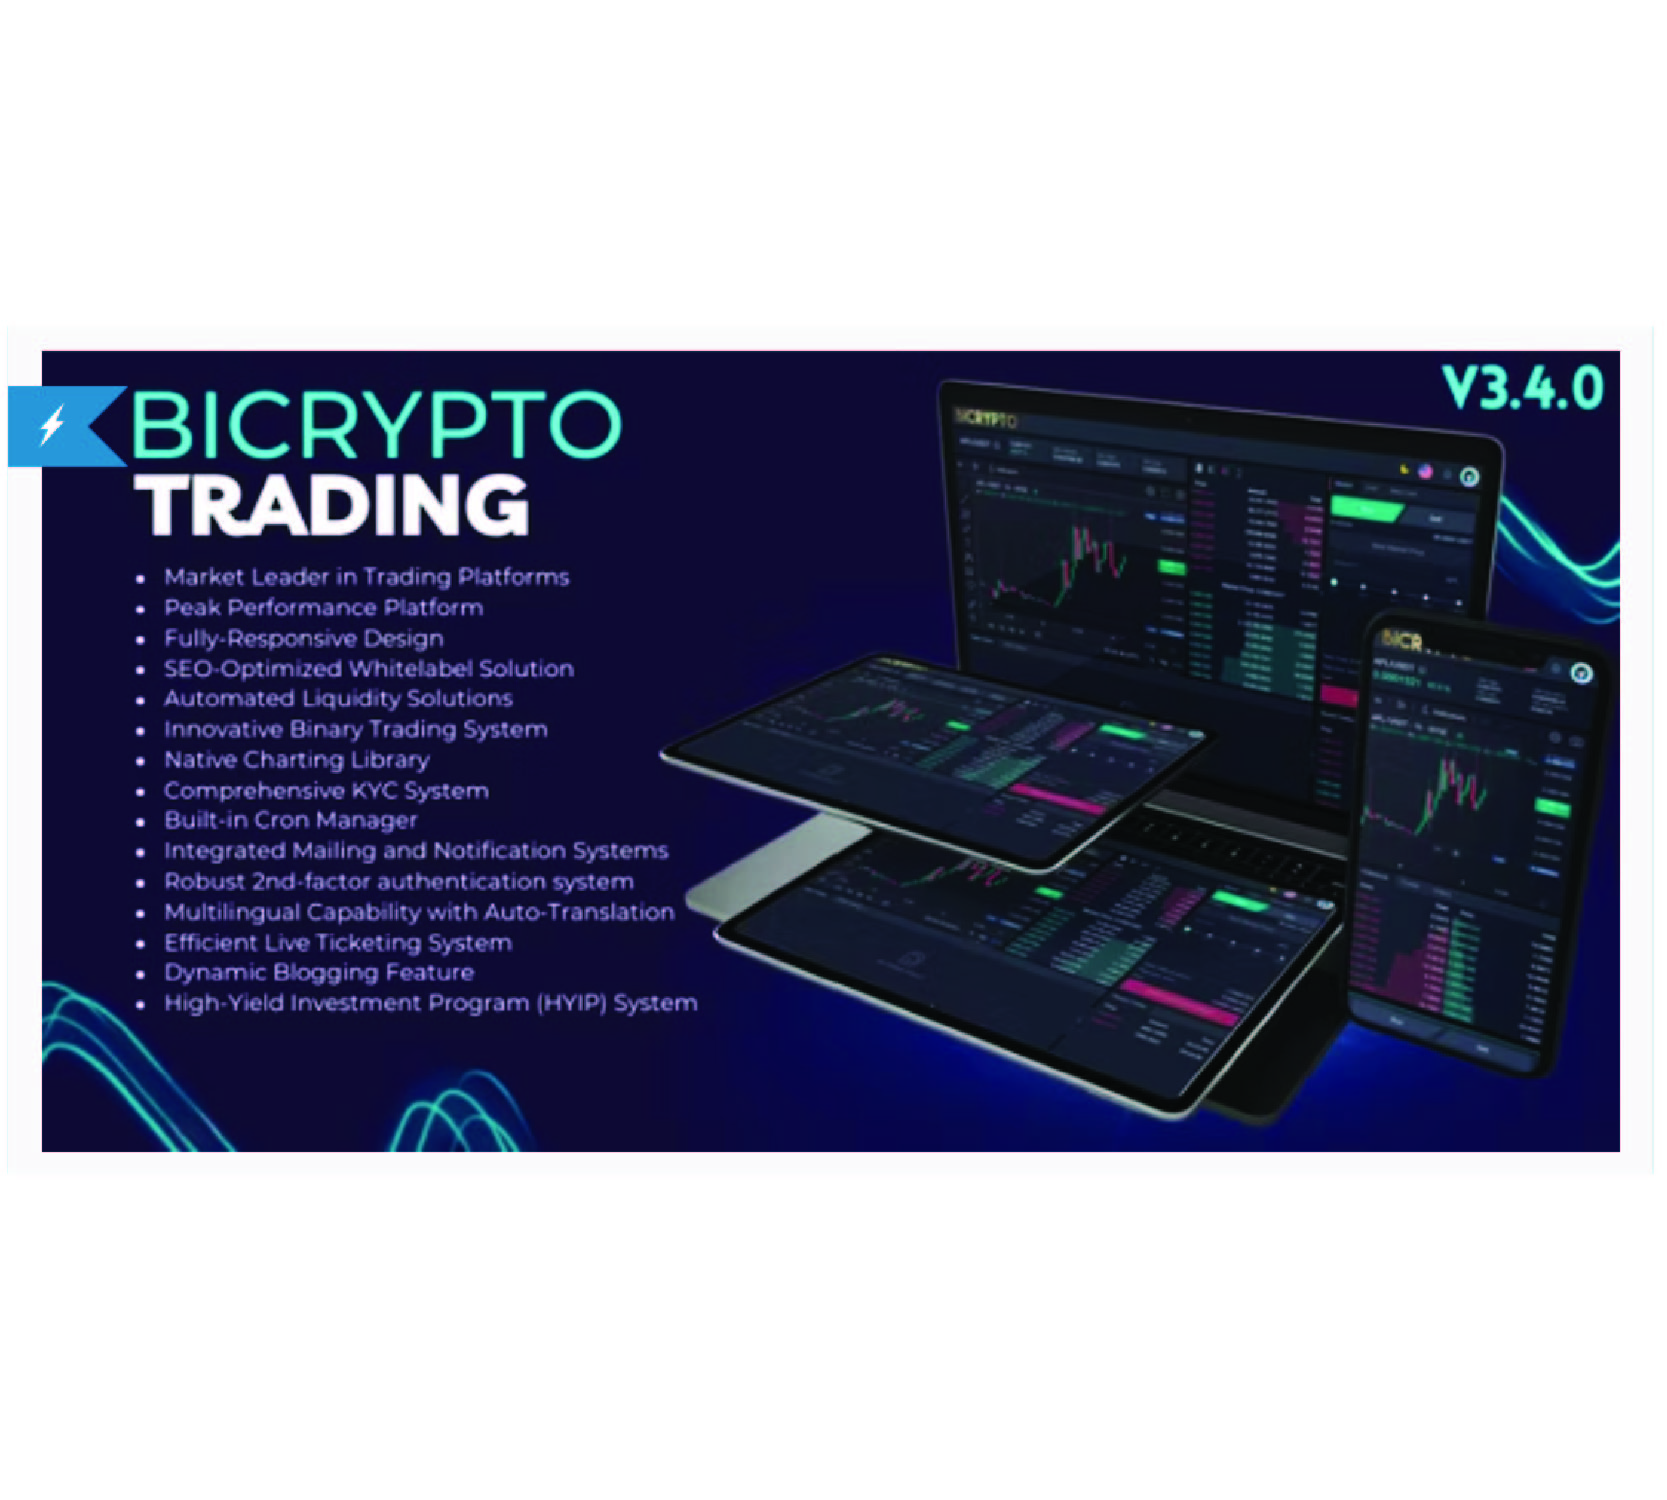 Bicrypto - 加密货币交易平台、二元交易、投资、博客、新闻及更多！